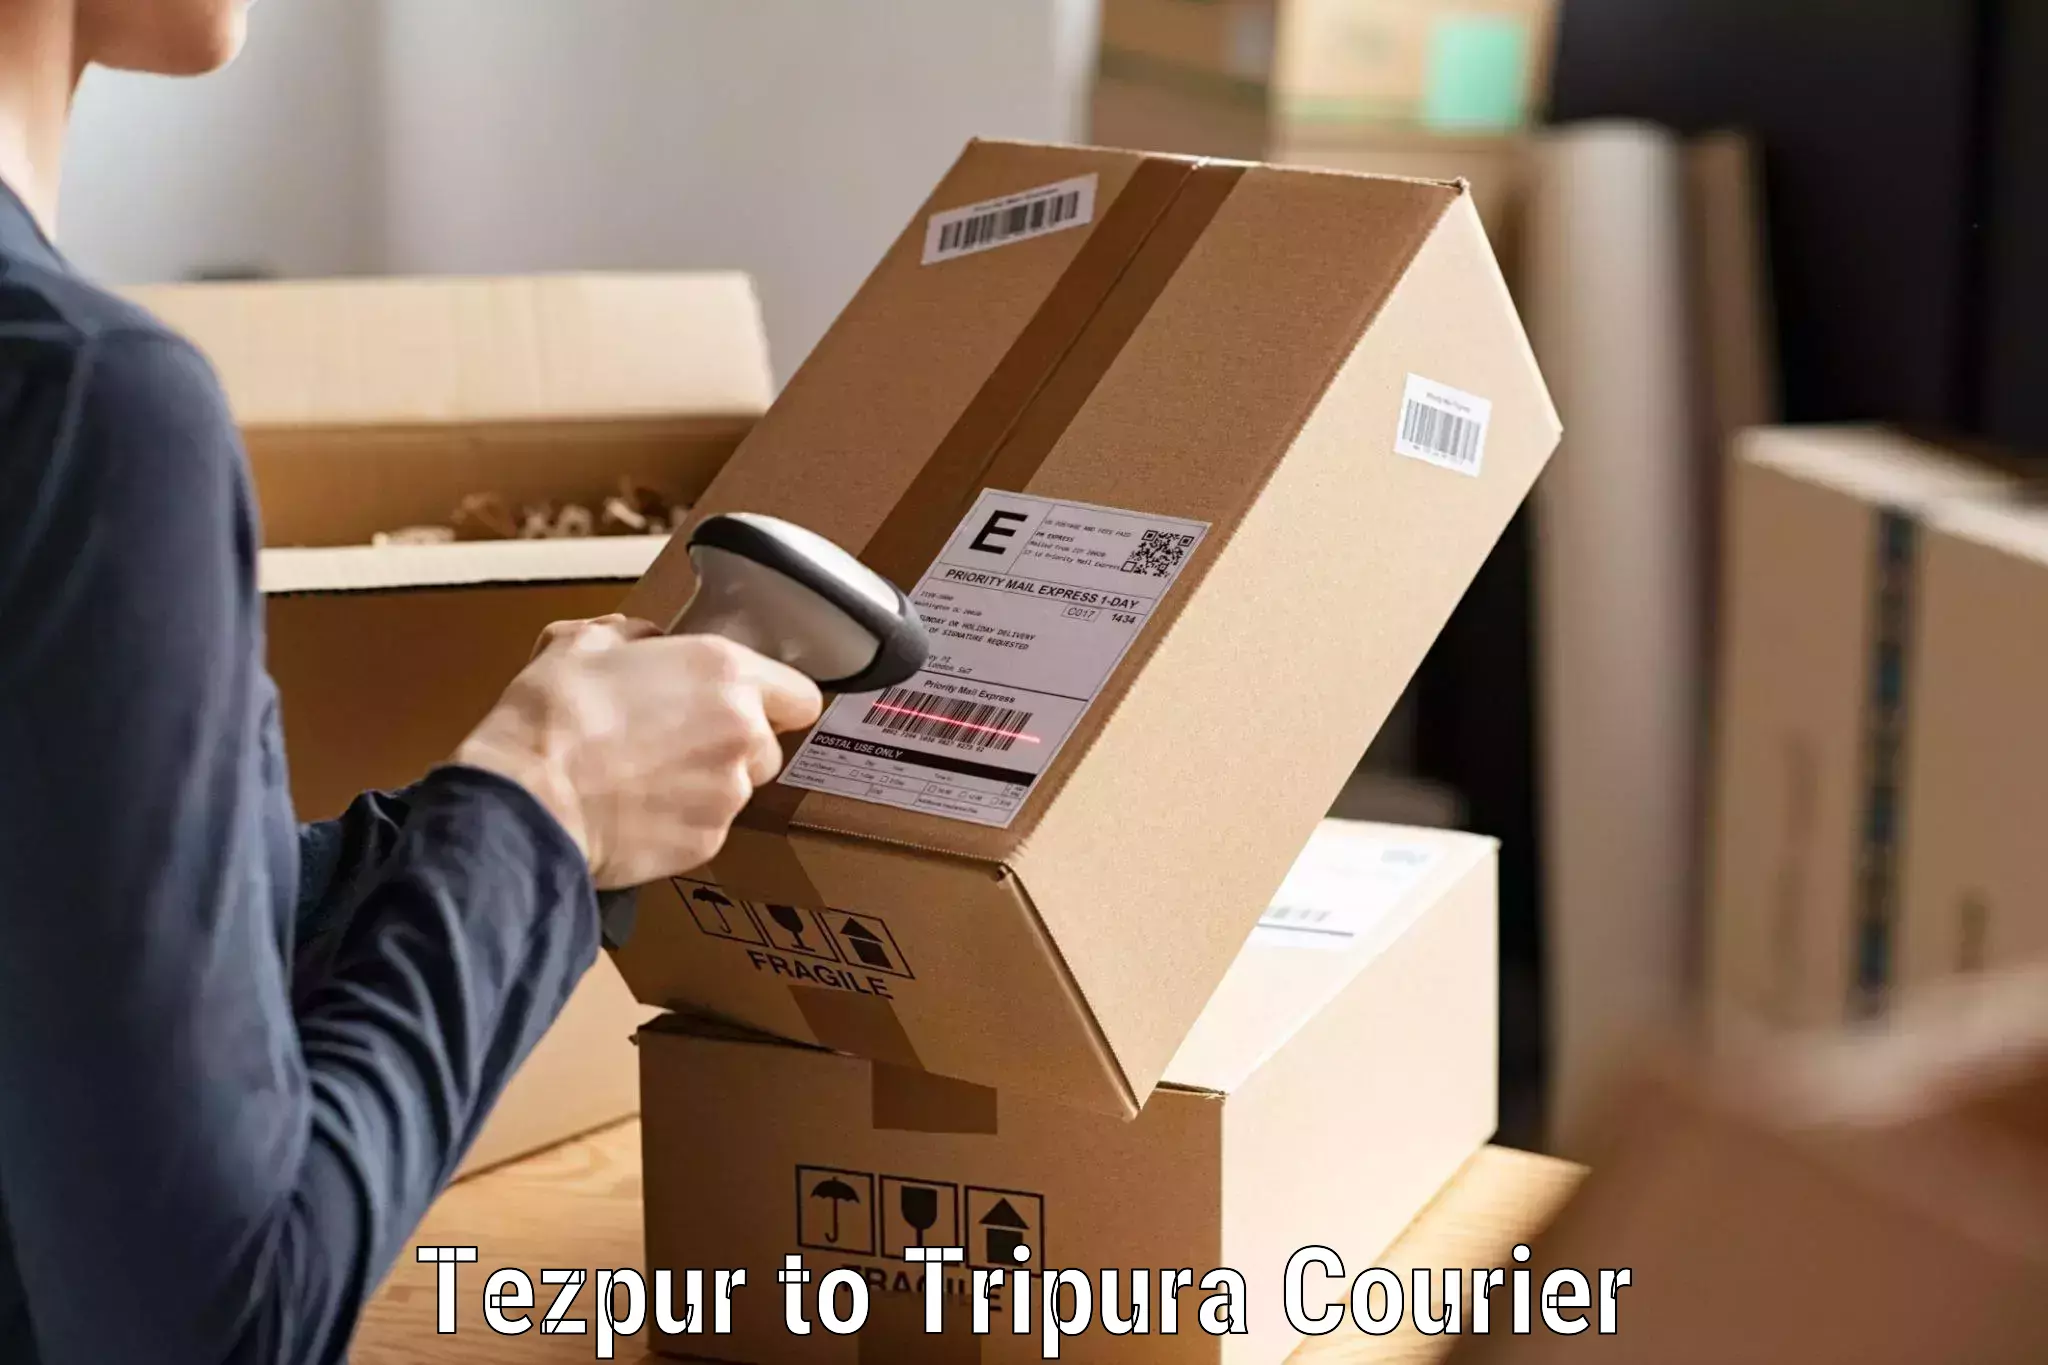 Remote area delivery Tezpur to Amarpur